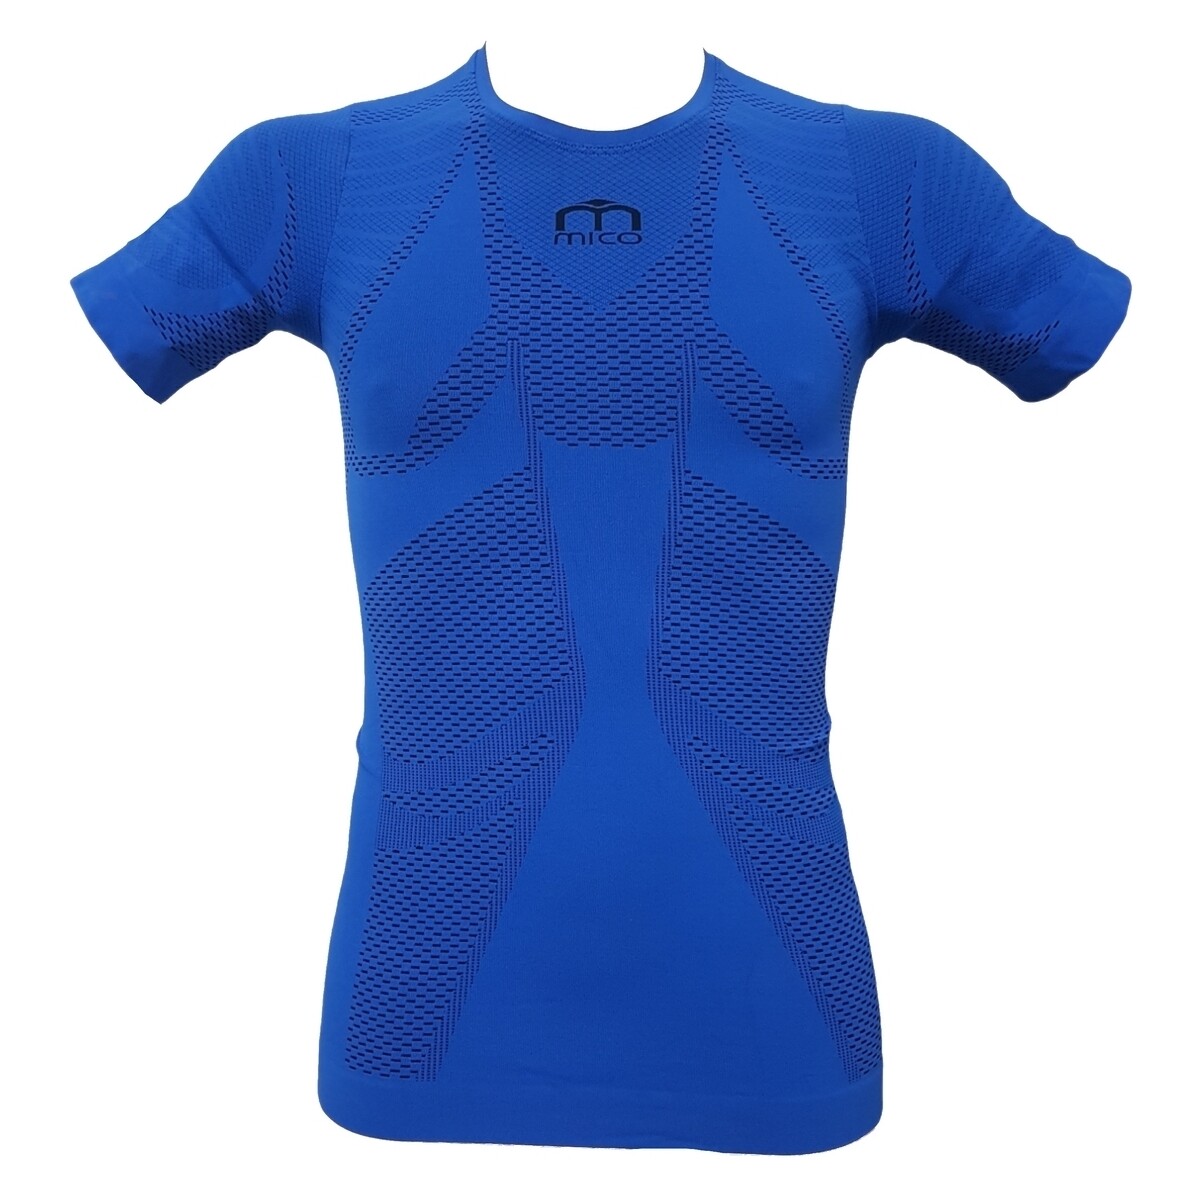 Vêtements Homme T-shirts manches courtes Mico IN1350 Bleu